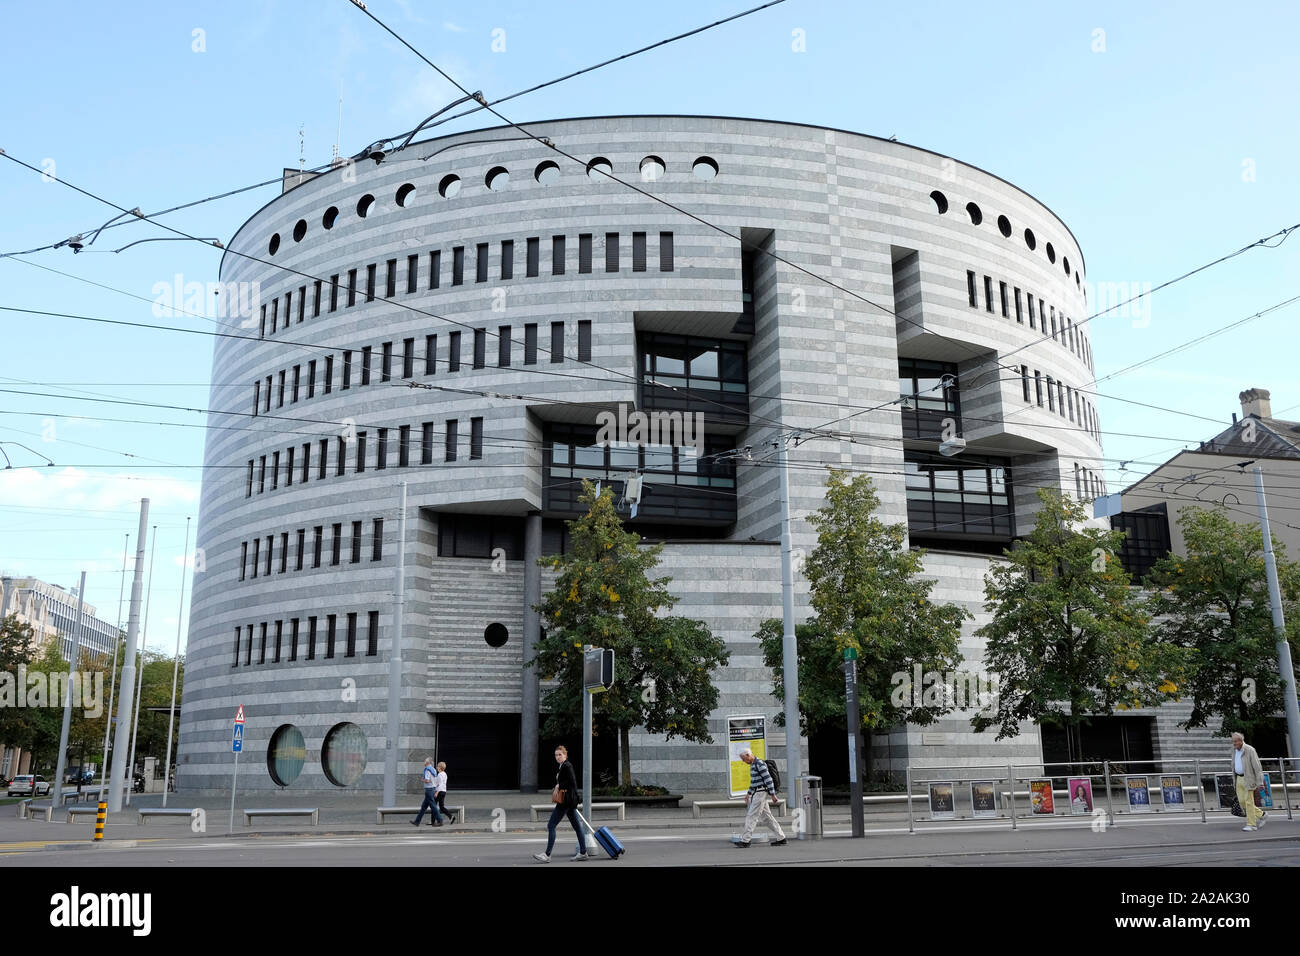 Une vue générale du bâtiment Botta, la Banque des règlements internationaux sur l'Aeschenplatz, Bâle, Suisse. Banque D'Images